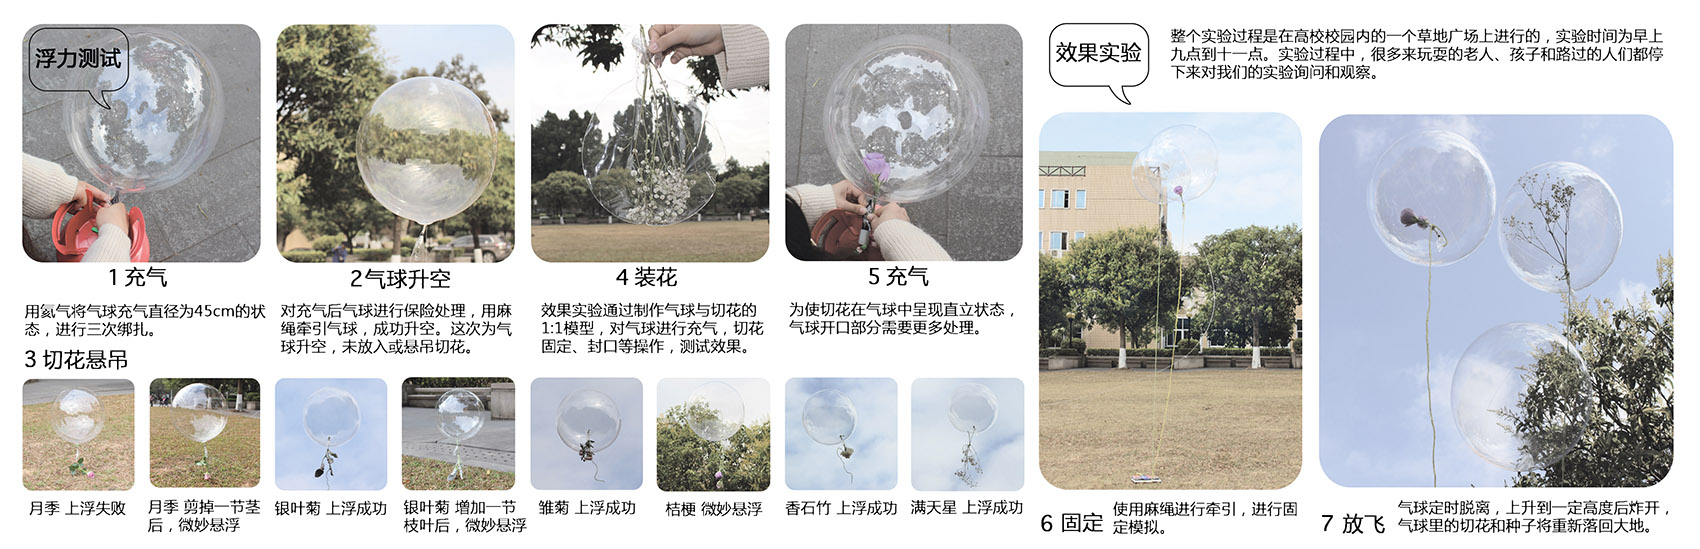 消失的花园，广州/装置景观象征自然与生命的时间性质-13